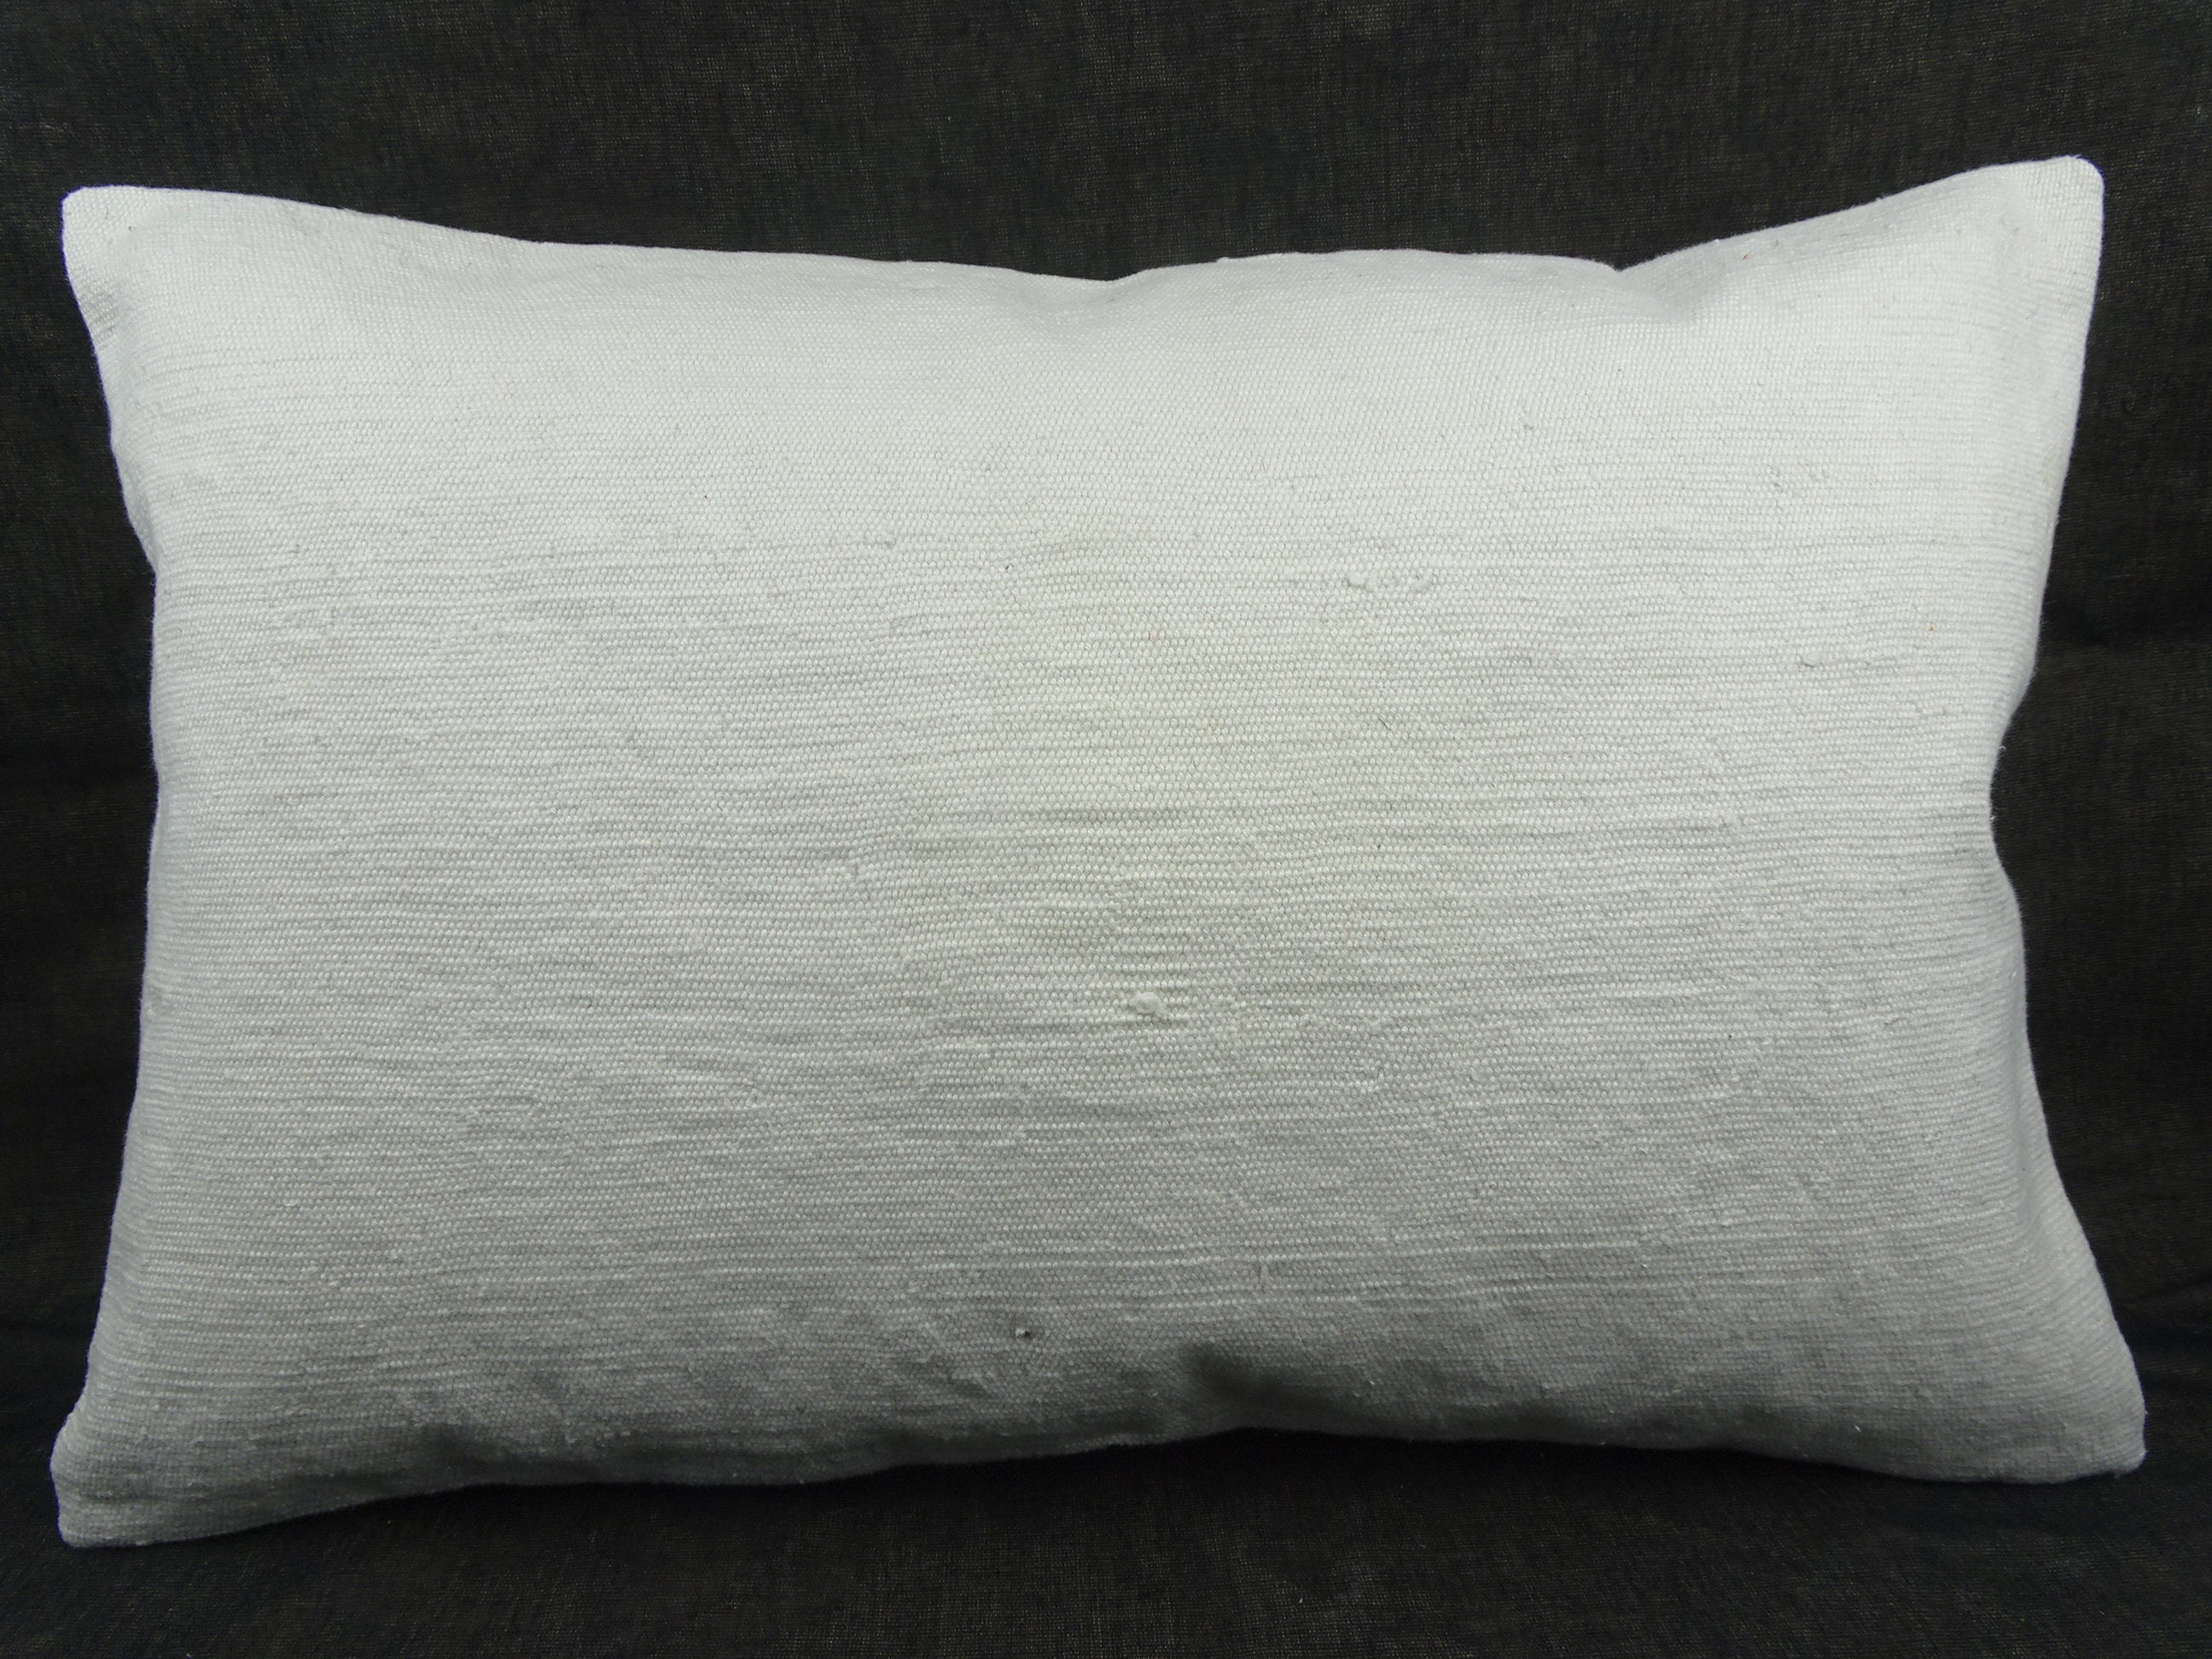 Lumbar Cotton Kilim Pillow,24x16 inch 60x40 Cm Handmade Turkish Kilim Pillow  Cover,White Cotton Kilim Pillow,Lumber Cushion Cover.